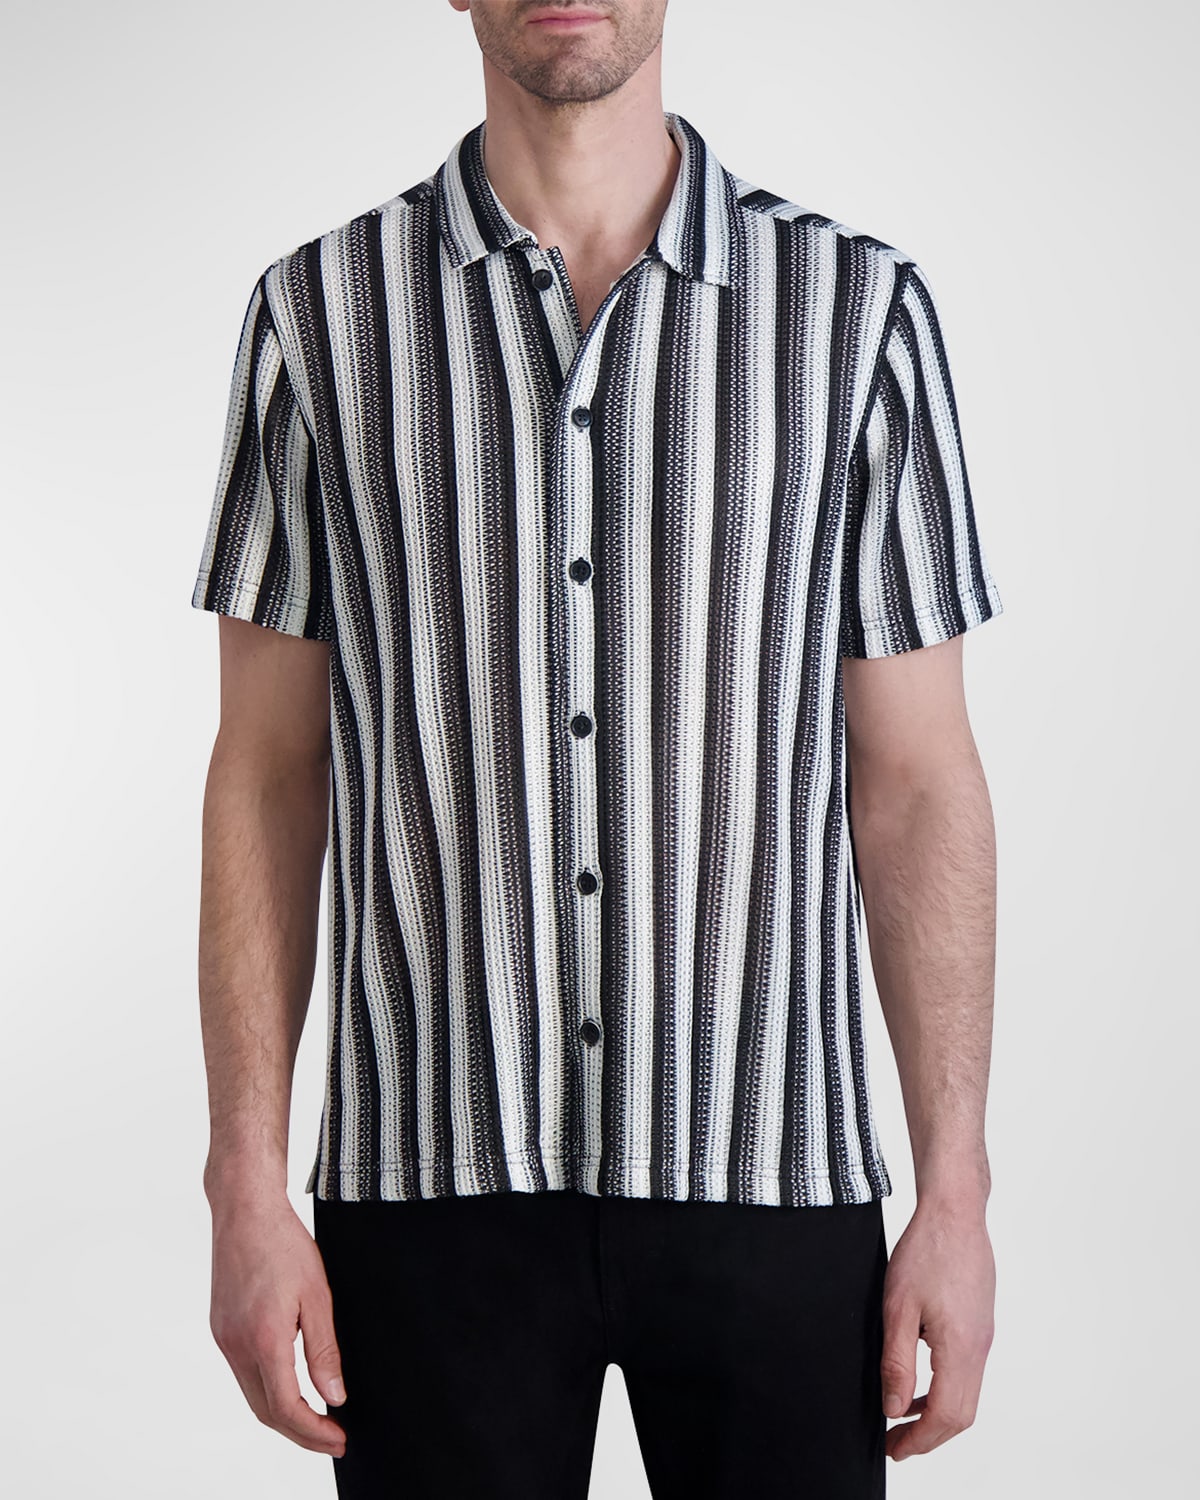 Men's Knit Striped Button-Down Shirt